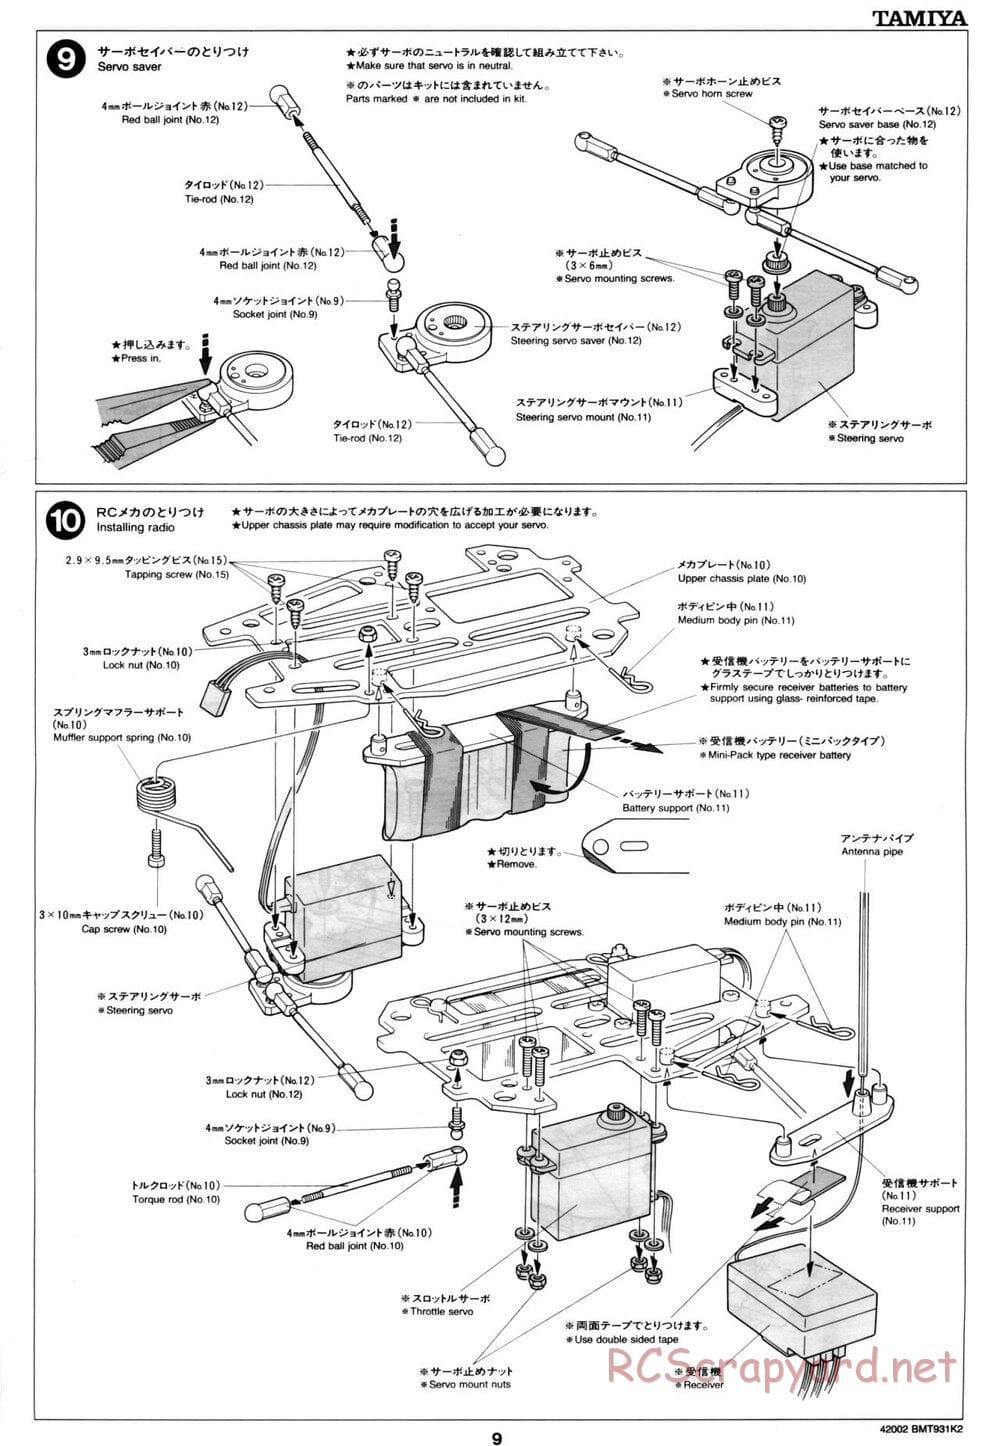 Tamiya - BMT 931 K2 Racing Chassis - Manual - Page 9